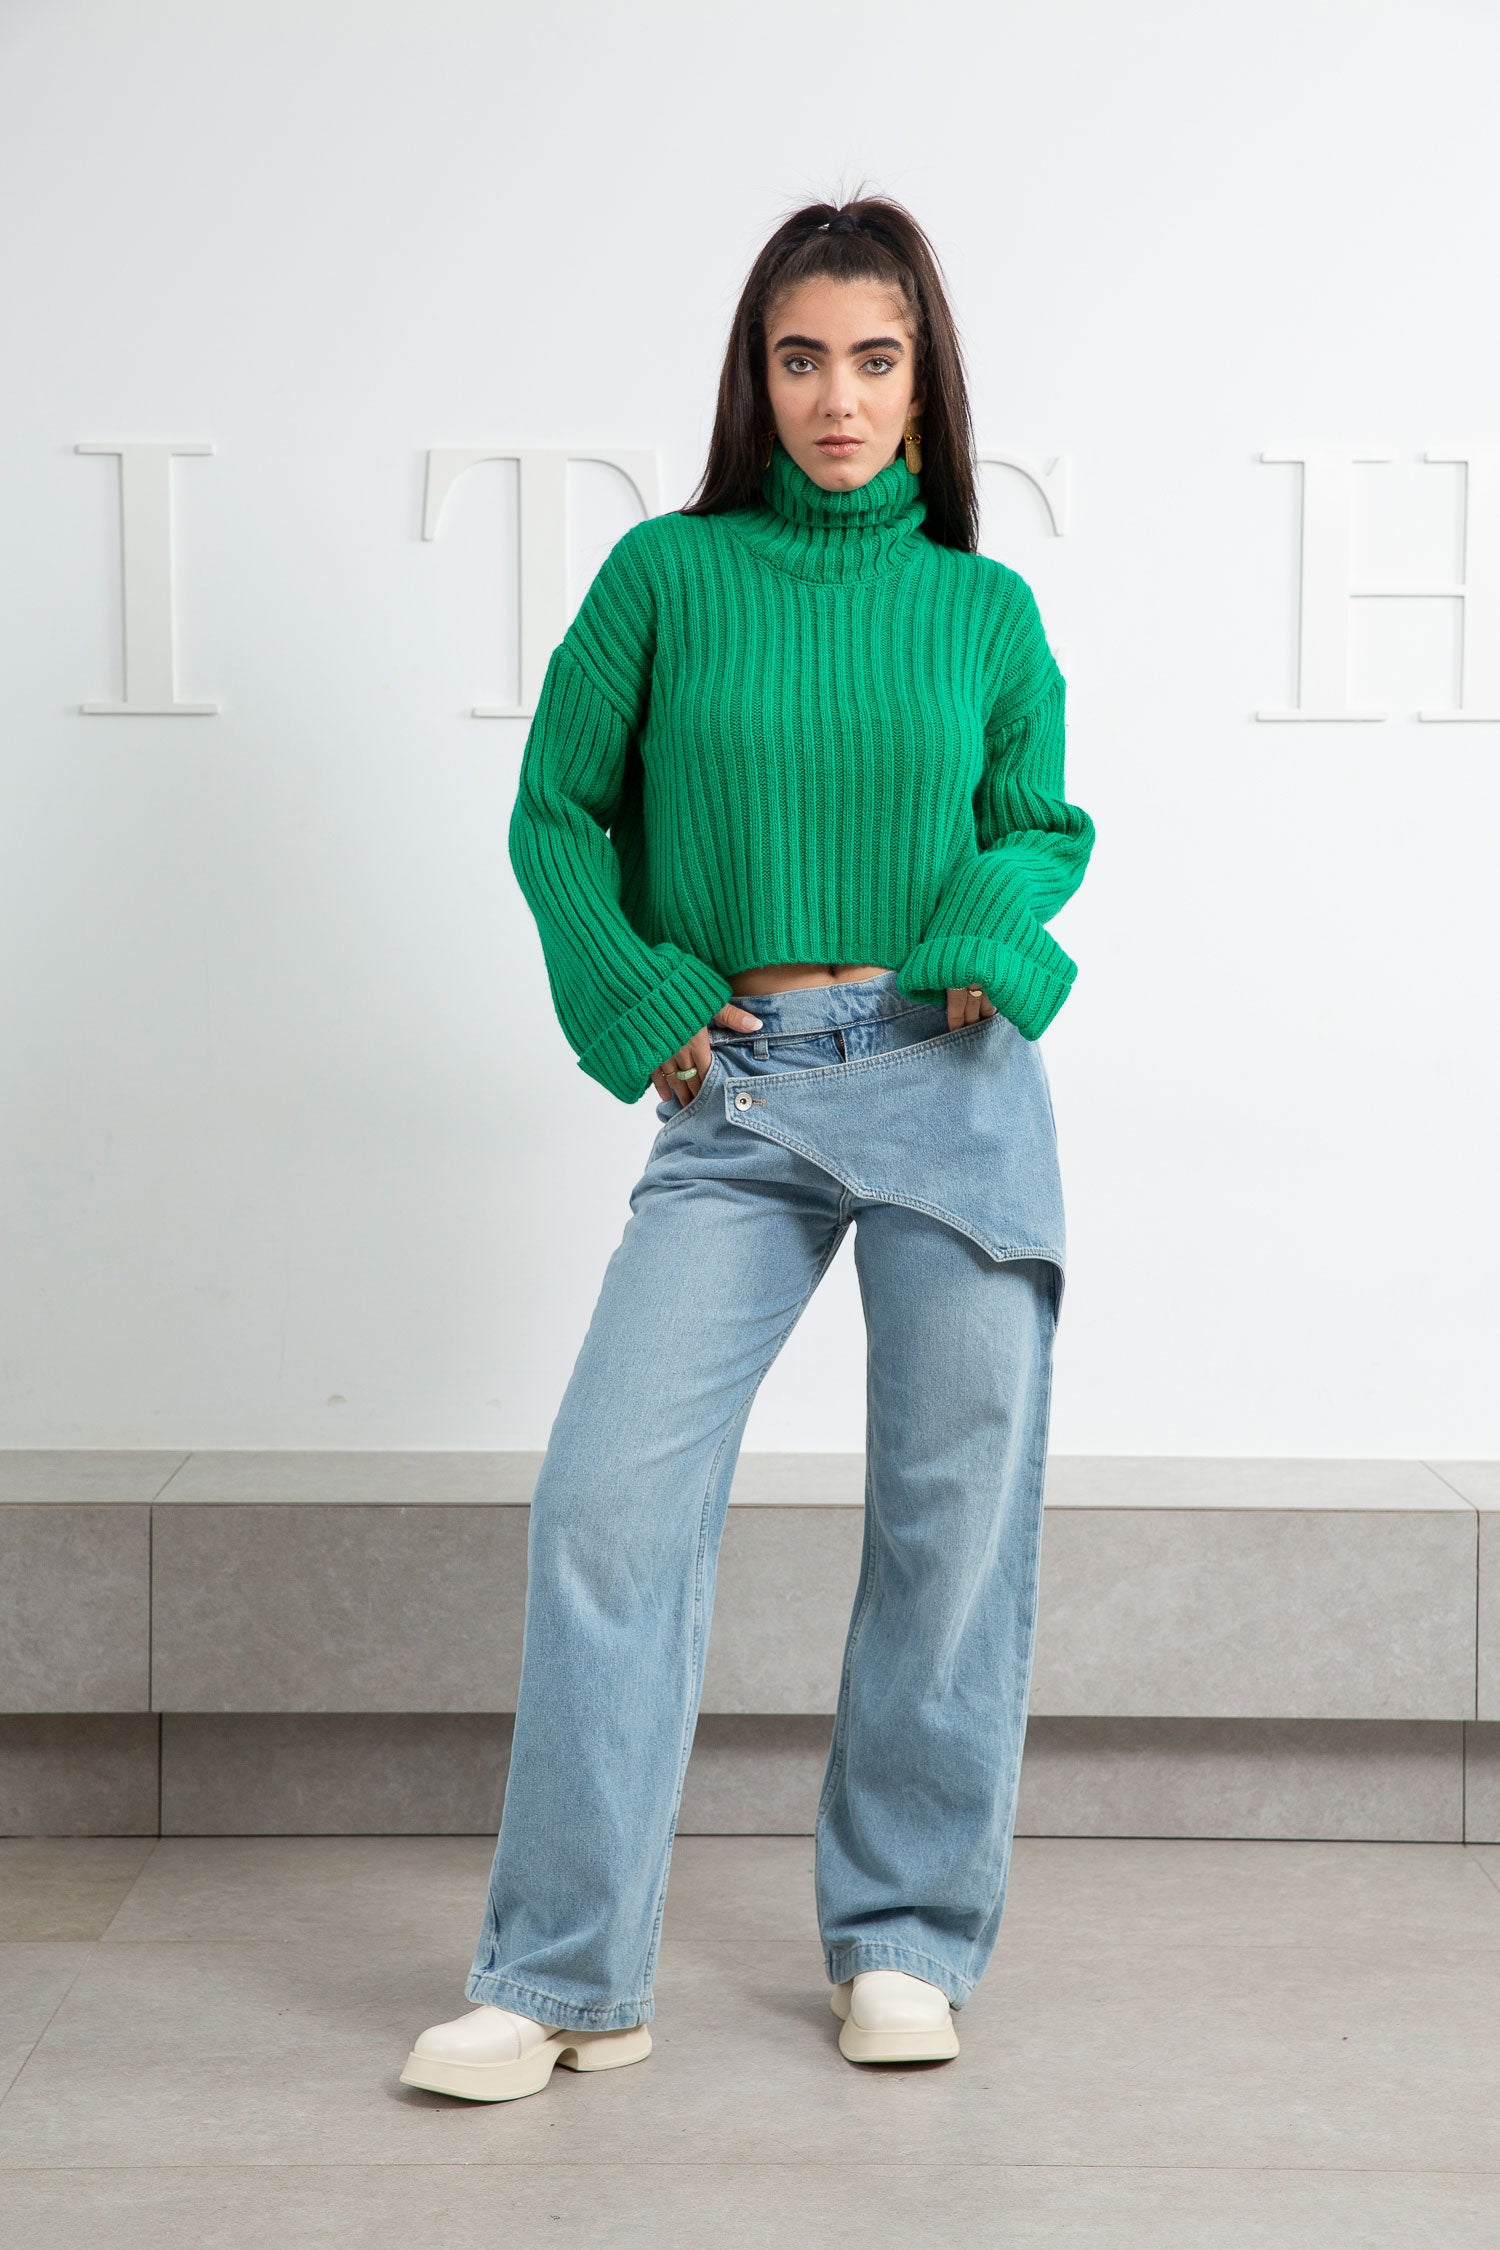 Front Belt Jeans - Mitcha Label